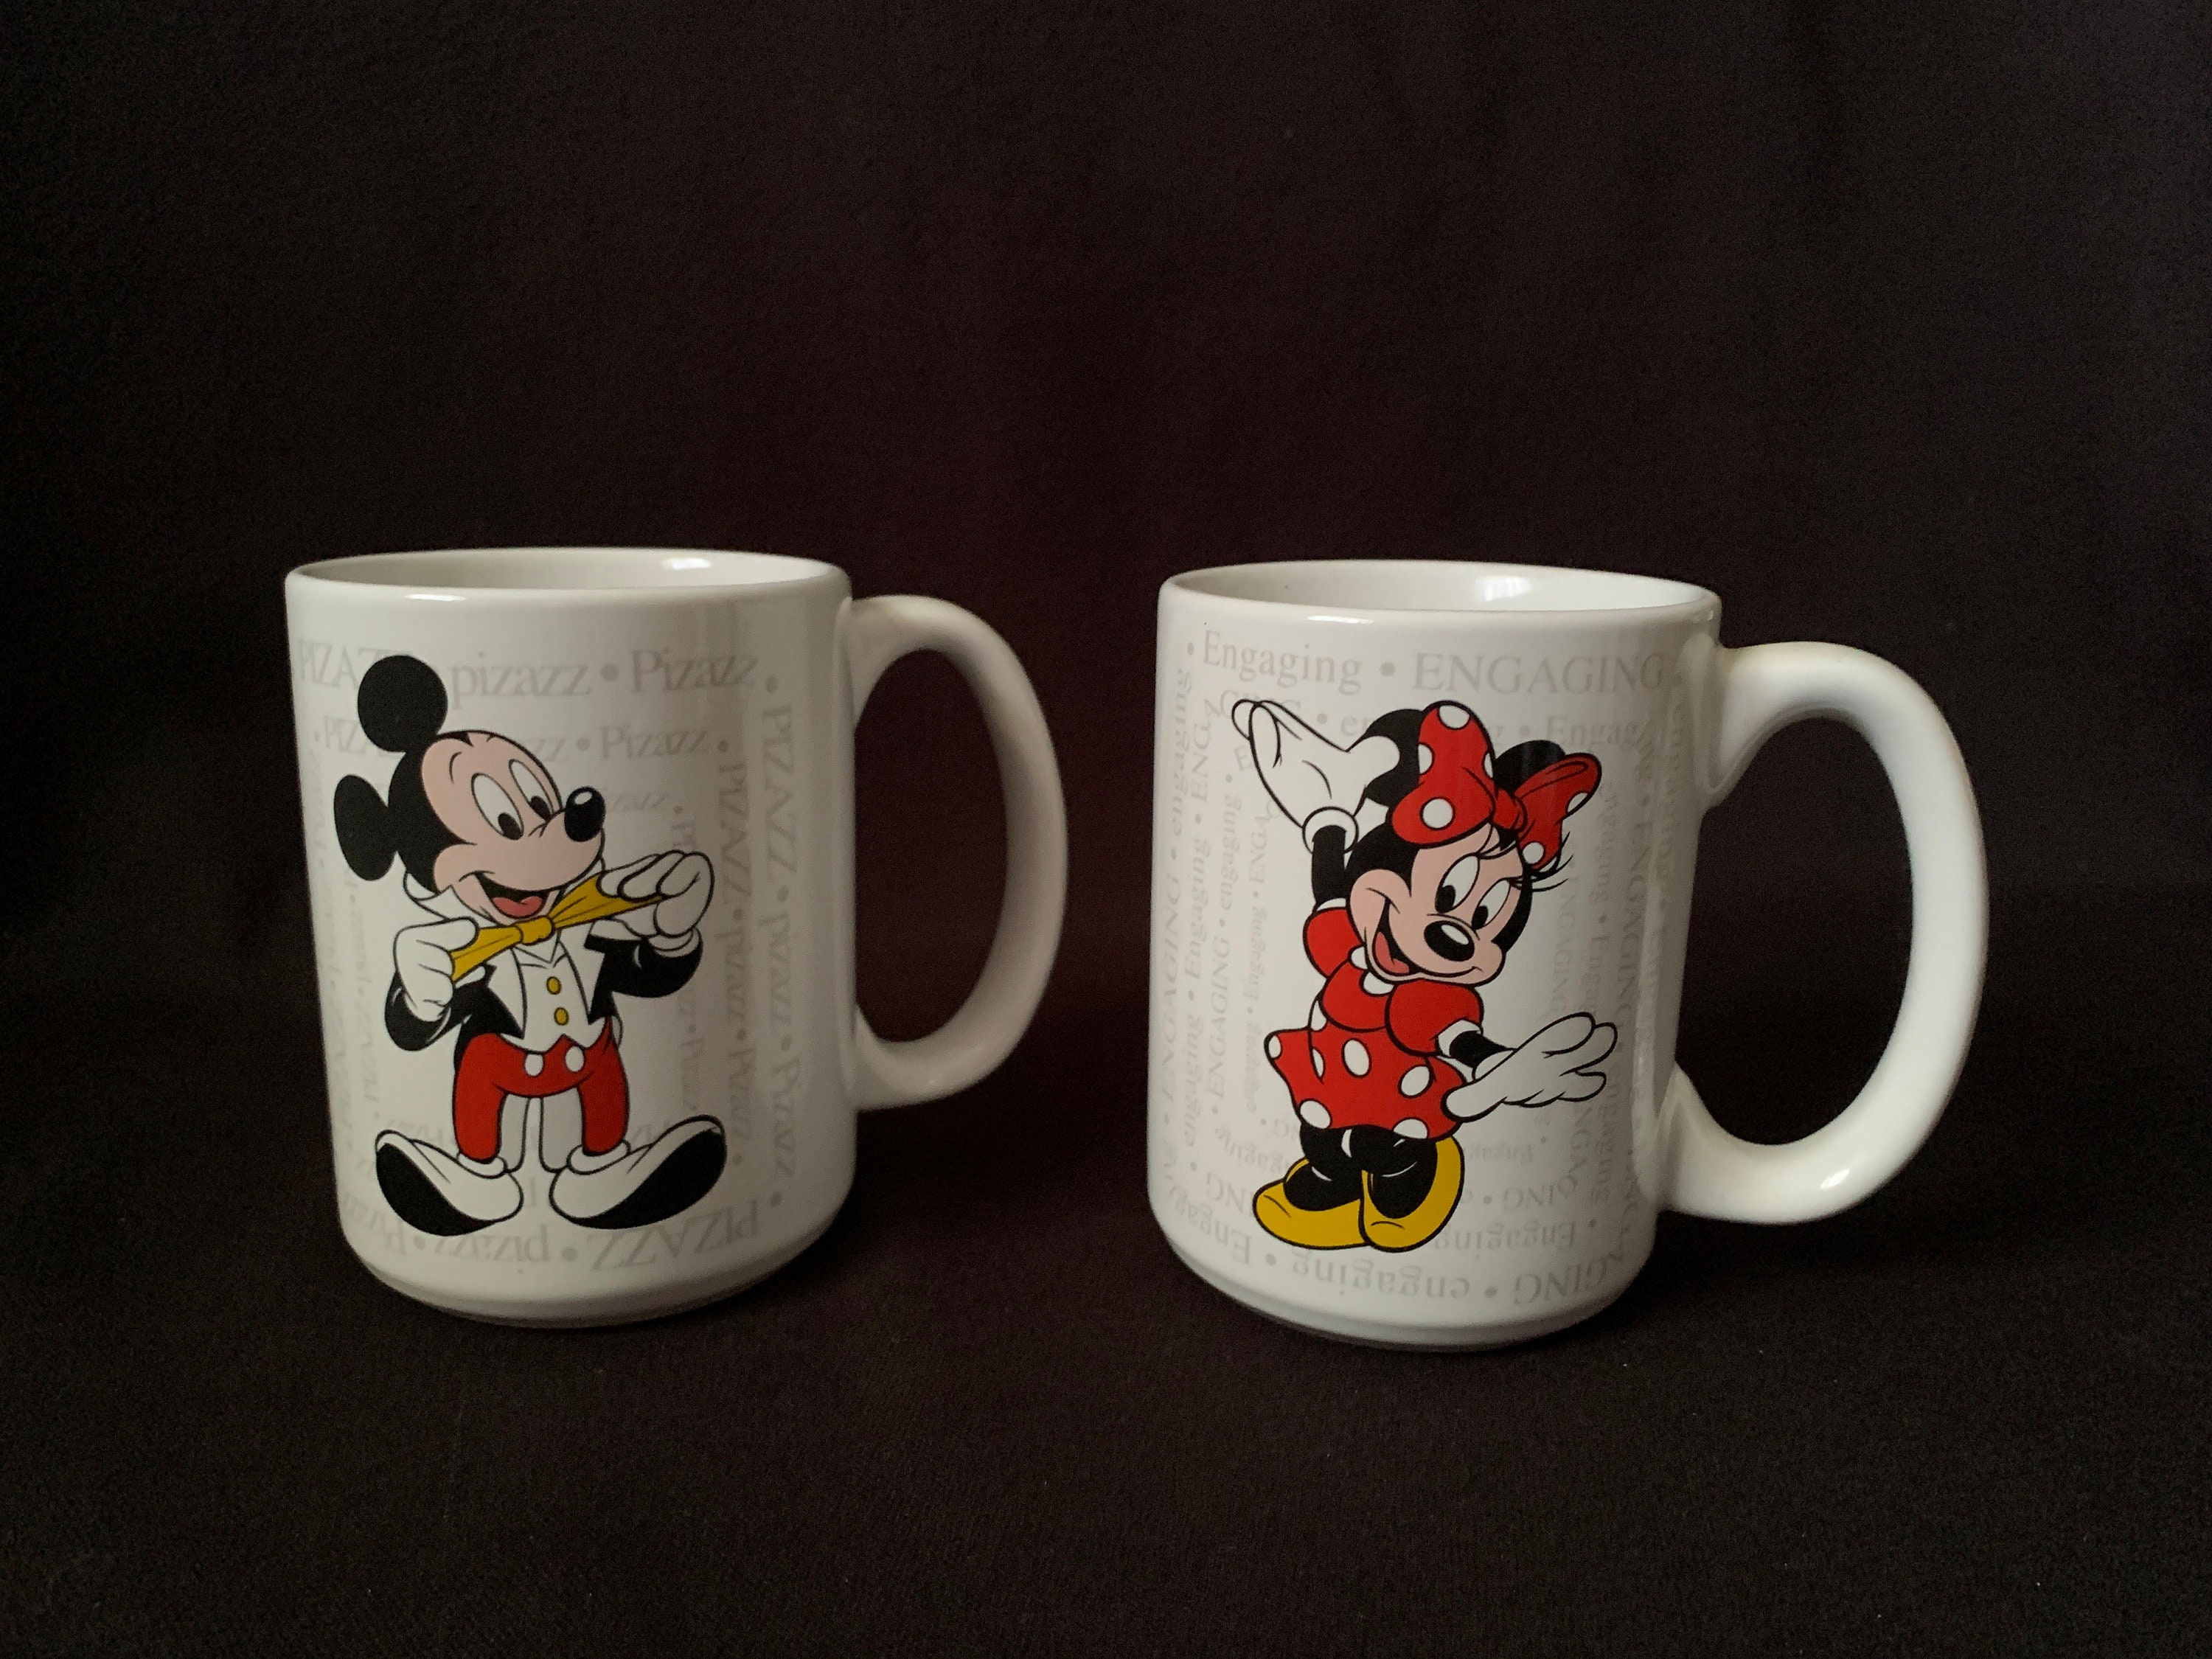 Par de tazas de Mickey Mouse y Minnie Mouse Cerámica